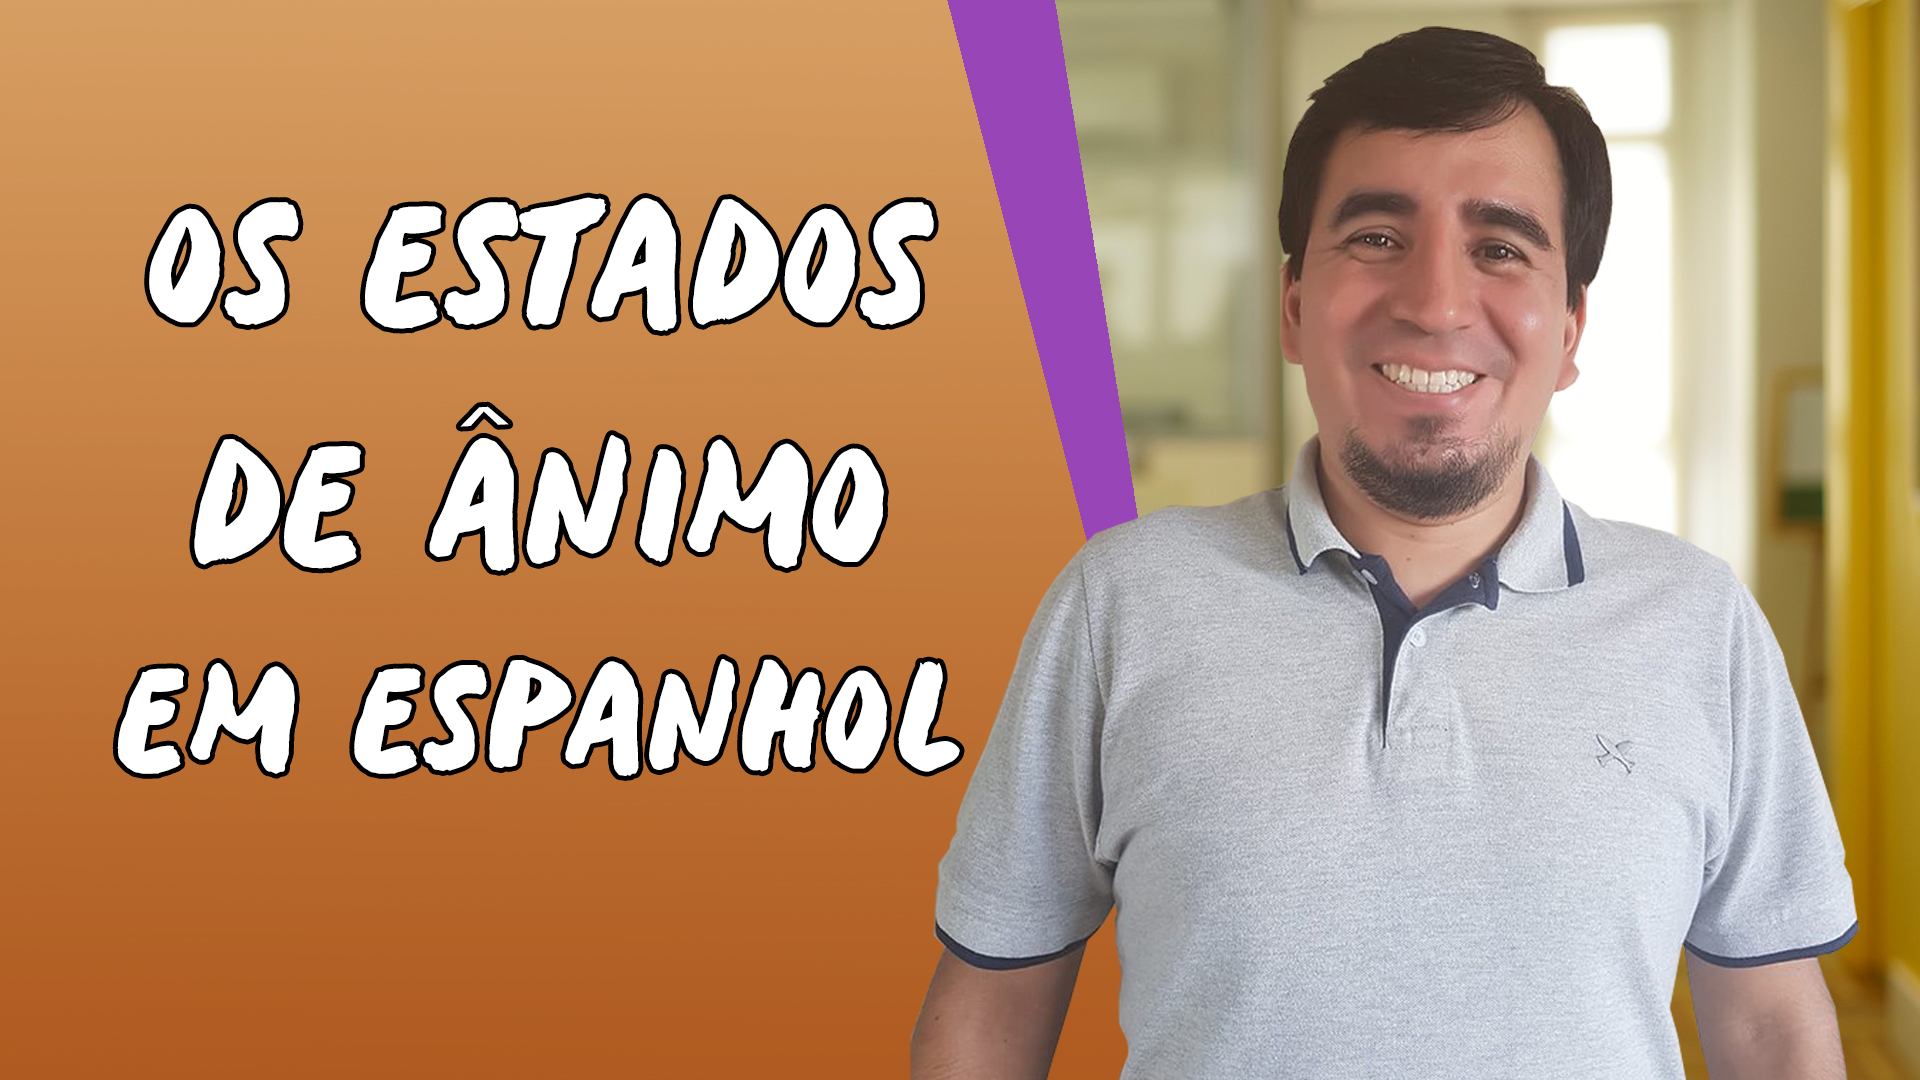 "Os Estados de Ânimo em Espanhol" escrito sobre fundo laranja ao lado da imagem do professor